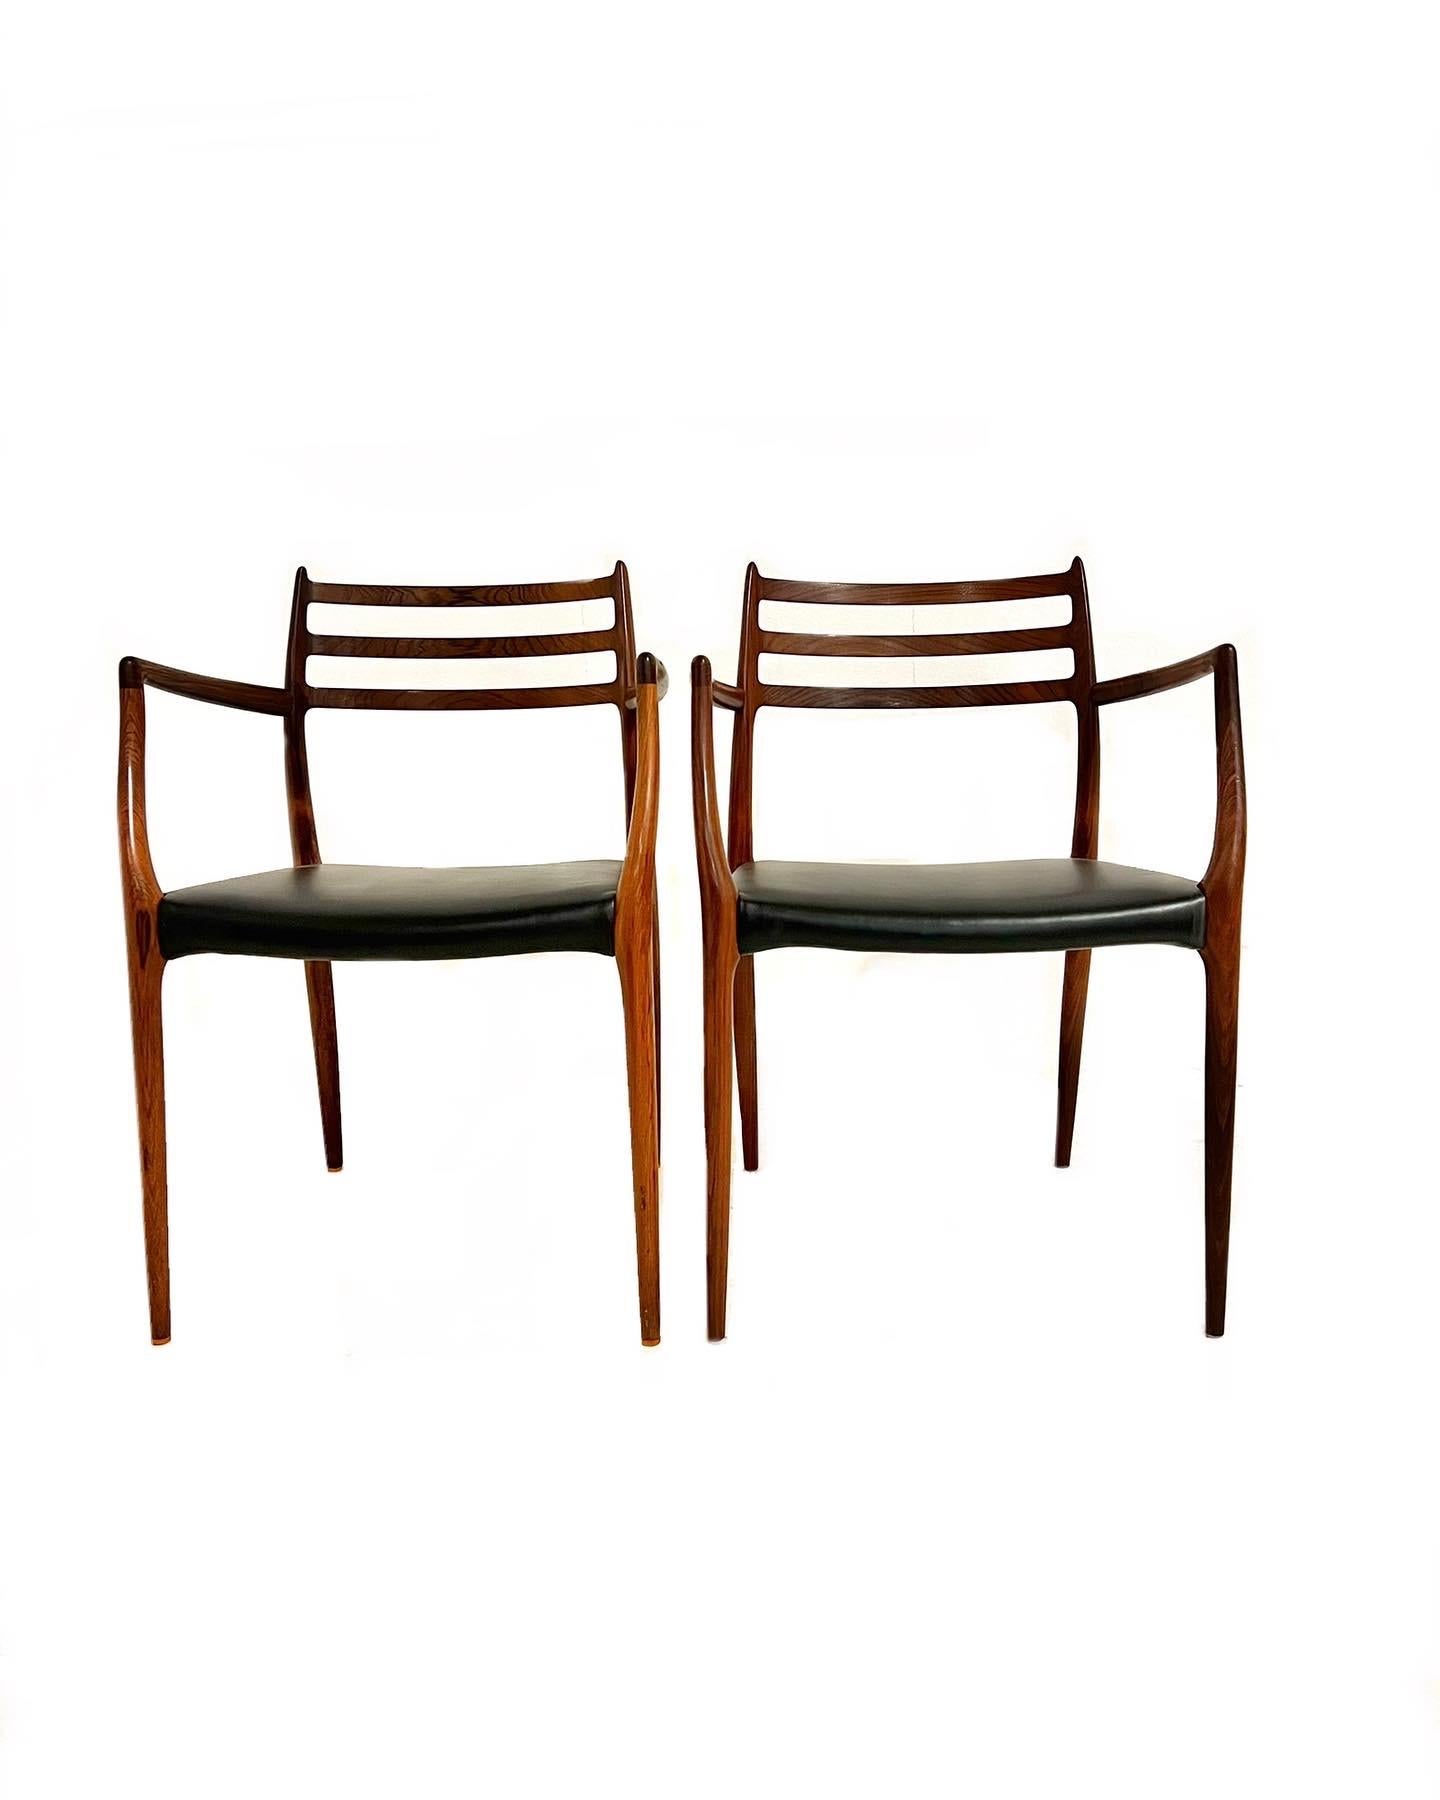 Niels Otto Møller, -Paar Sessel aus Palisanderholz, Modell 62, für J. L. Møller, Entwurf 1962. Diese wurden mit schwarzem Anilinleder neu gepolstert. Ein schwer zu findender Sessel, bei dem die organischen Linien und Kurven und das dünne Holz ein